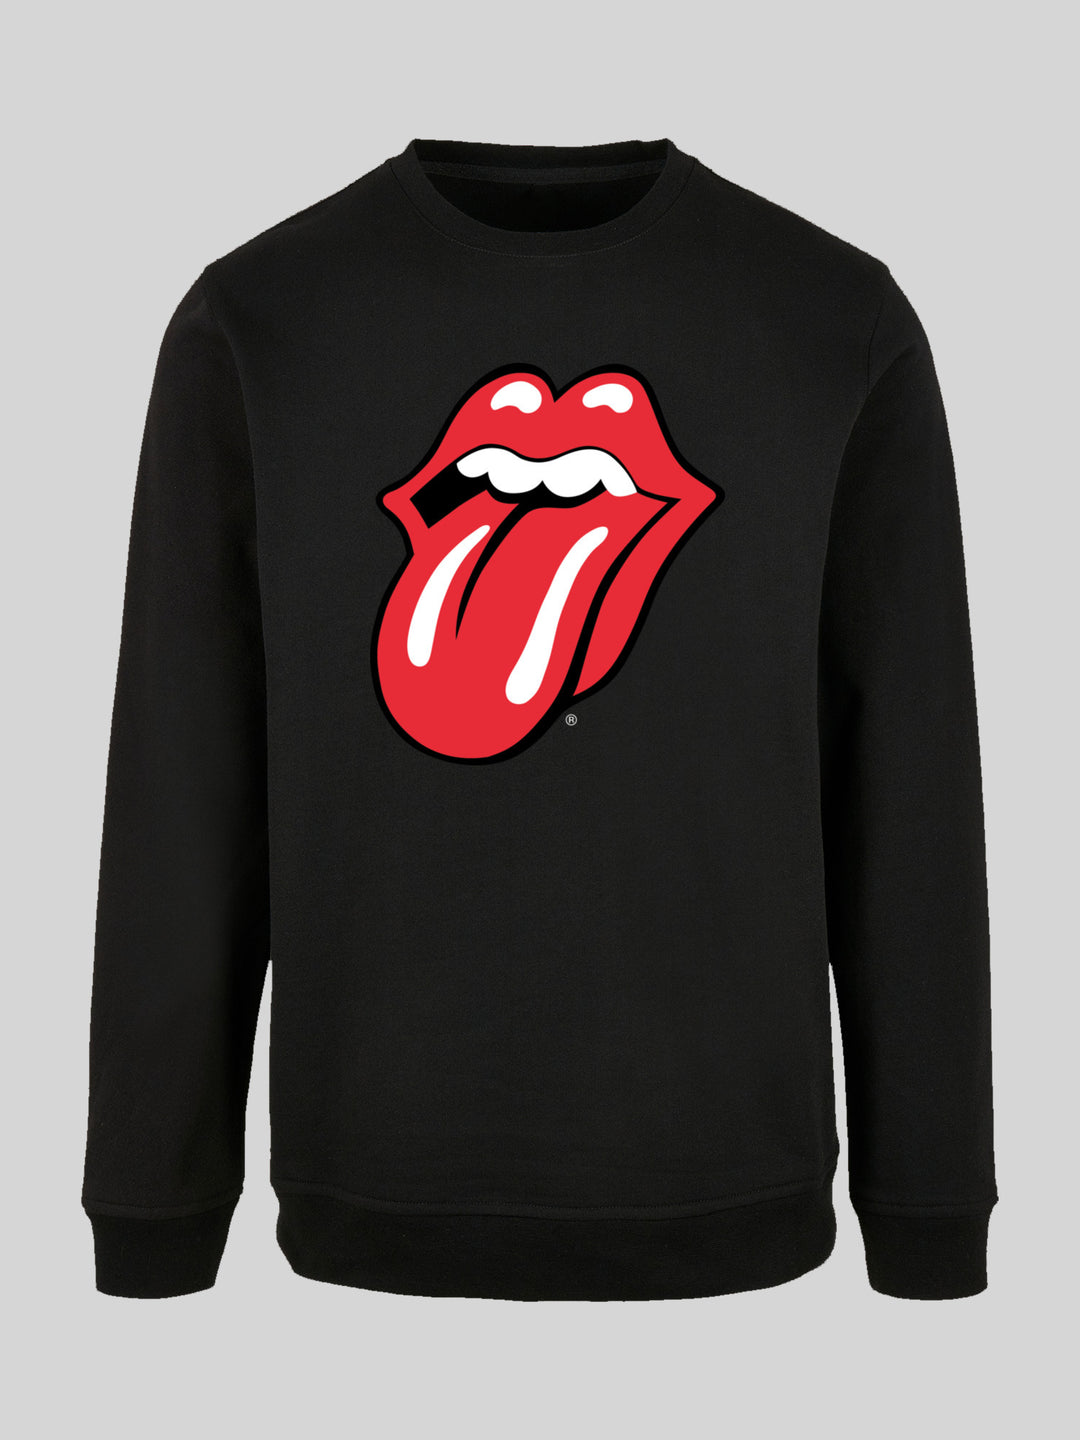 | – Sweate | Men Tongue Stones Rolling Sweatshirt The Longsleeve Classic F4NT4STIC